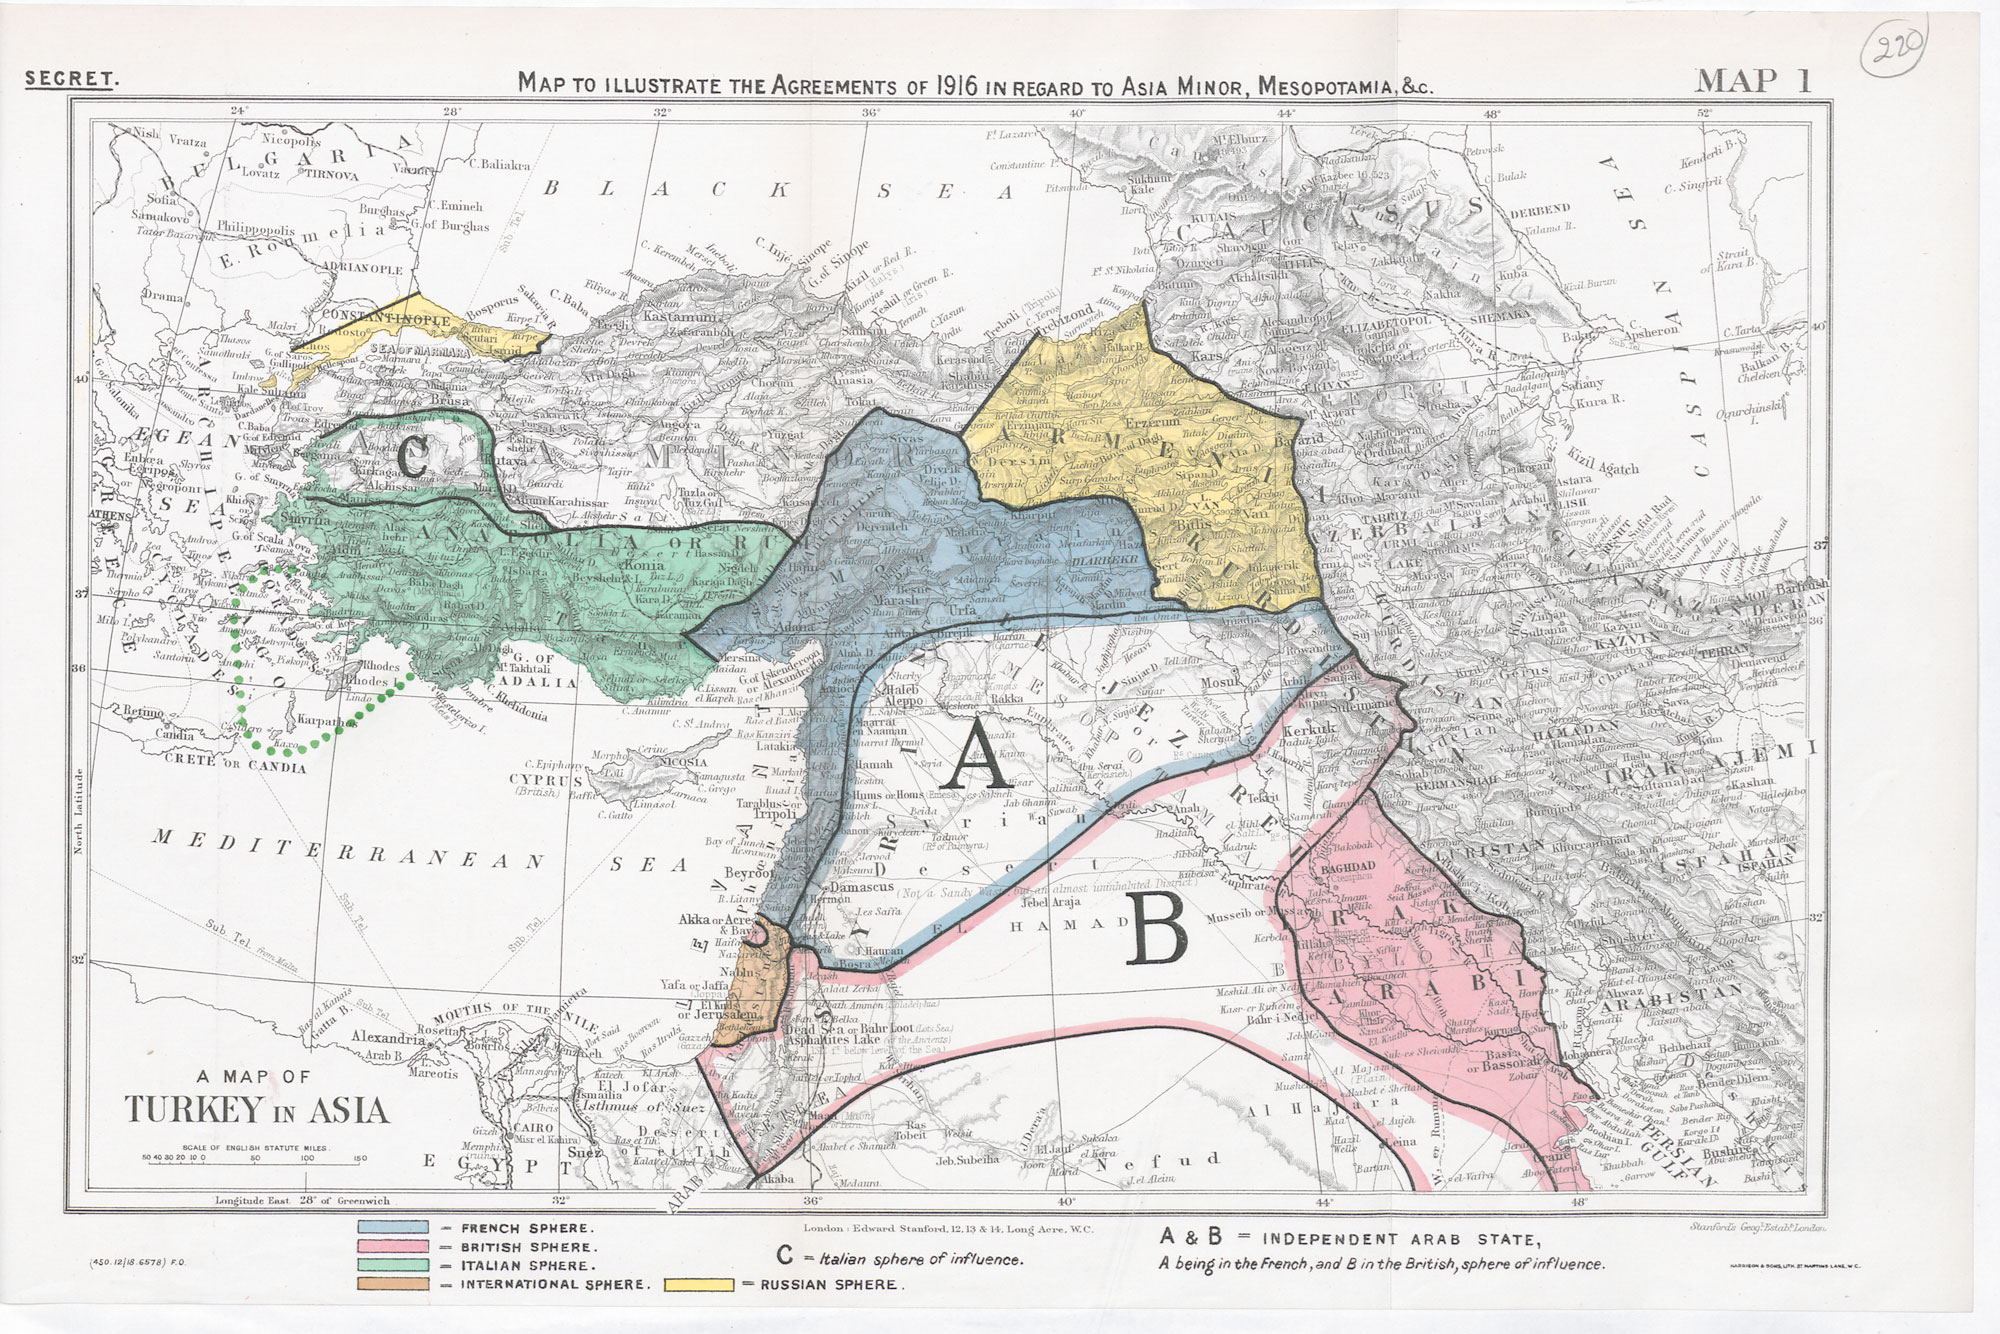 Imperiul Otoman